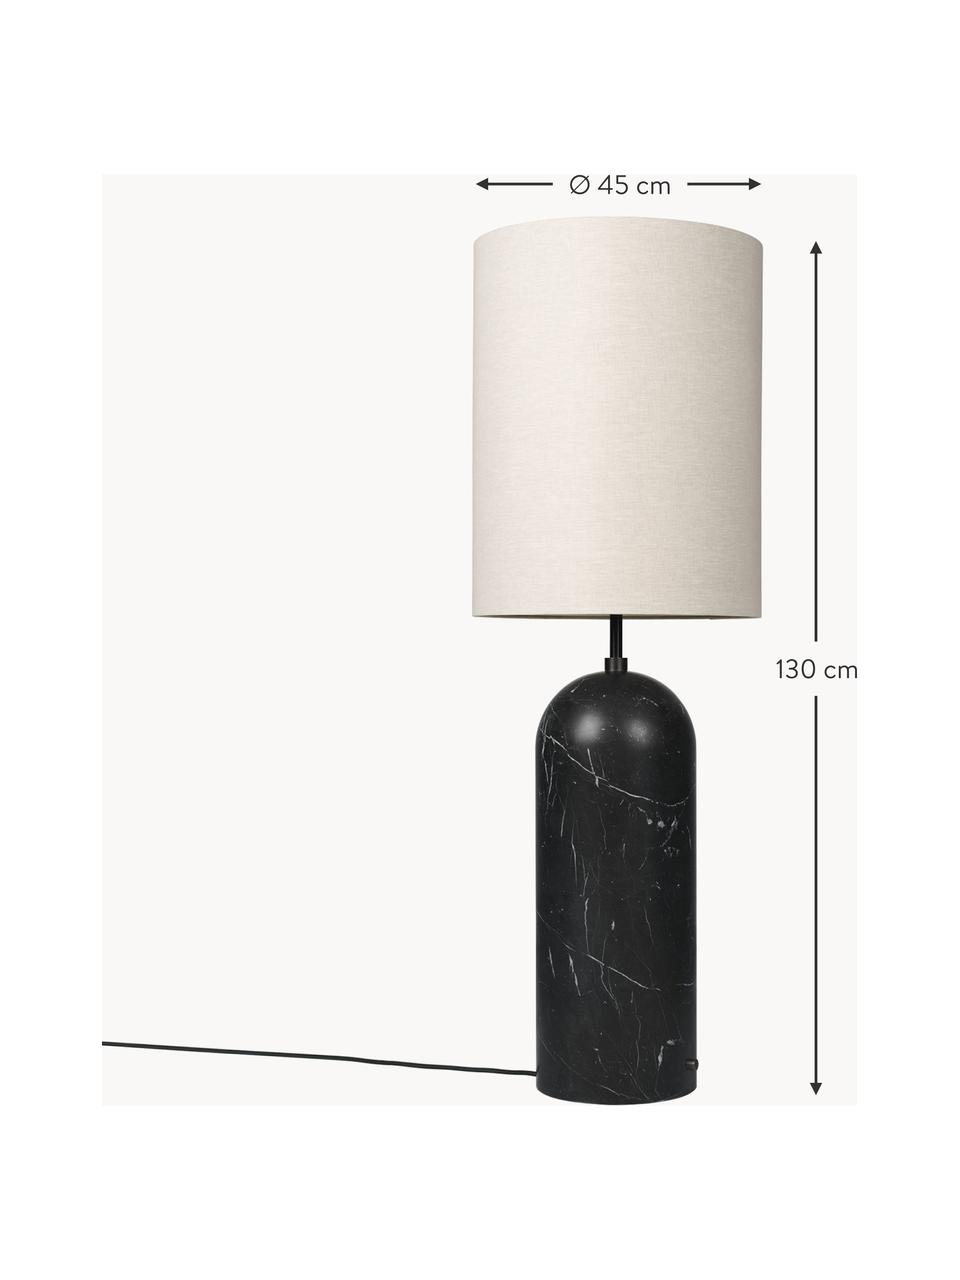 Petit lampadaire avec pied en marbre Gravity, intensité lumineuse variable, Beige clair, noir marbré, haut. 130 cm